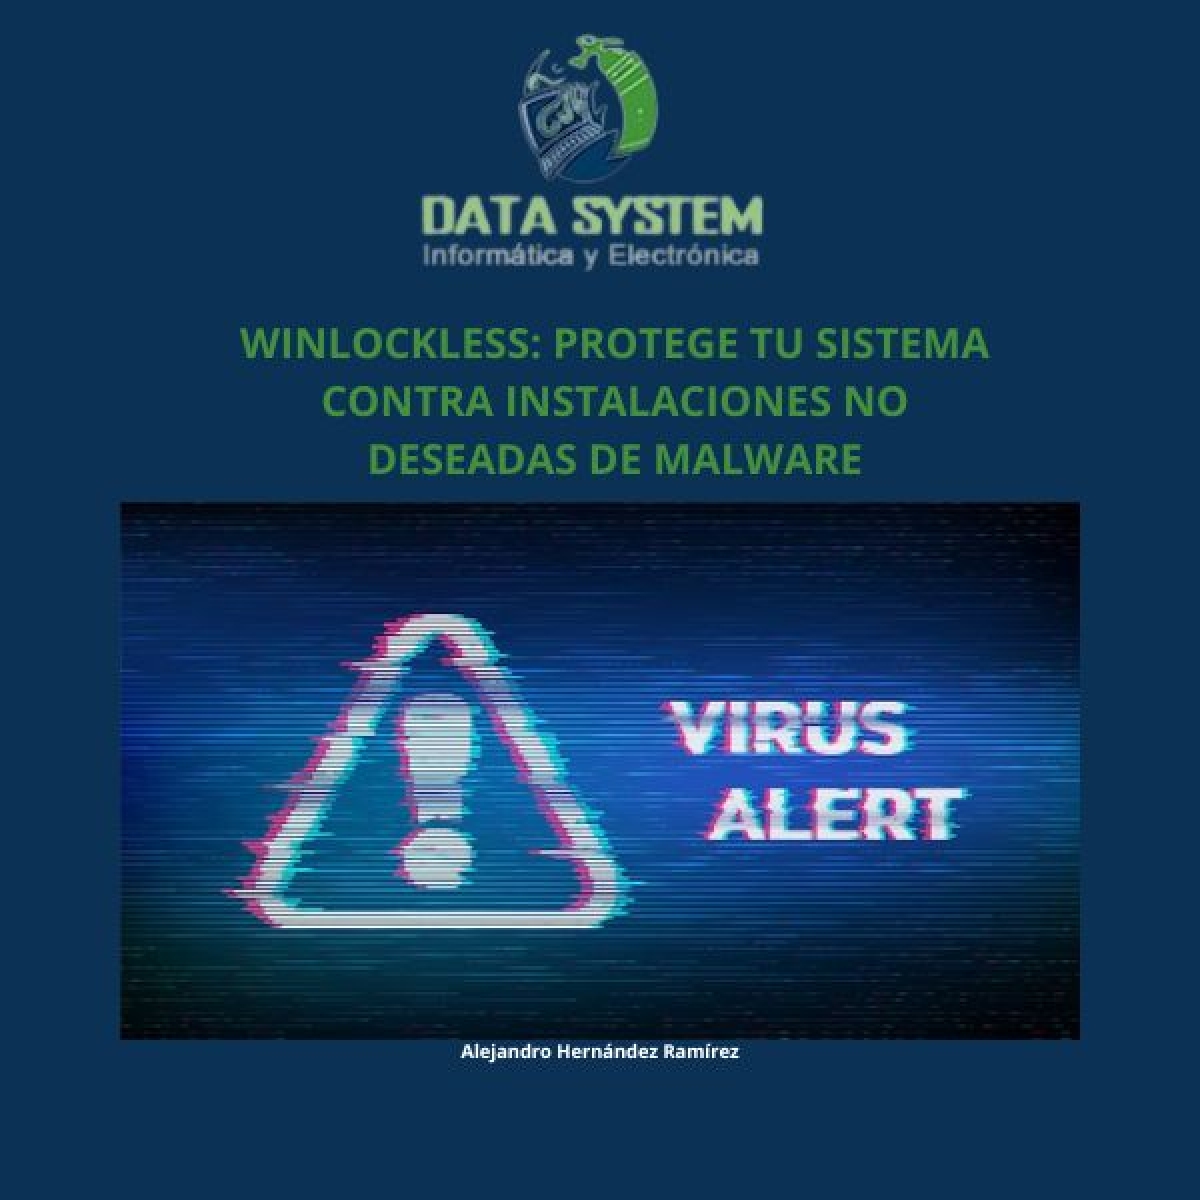 WinLockLess: Protege tu sistema contra instalaciones no deseadas de malware